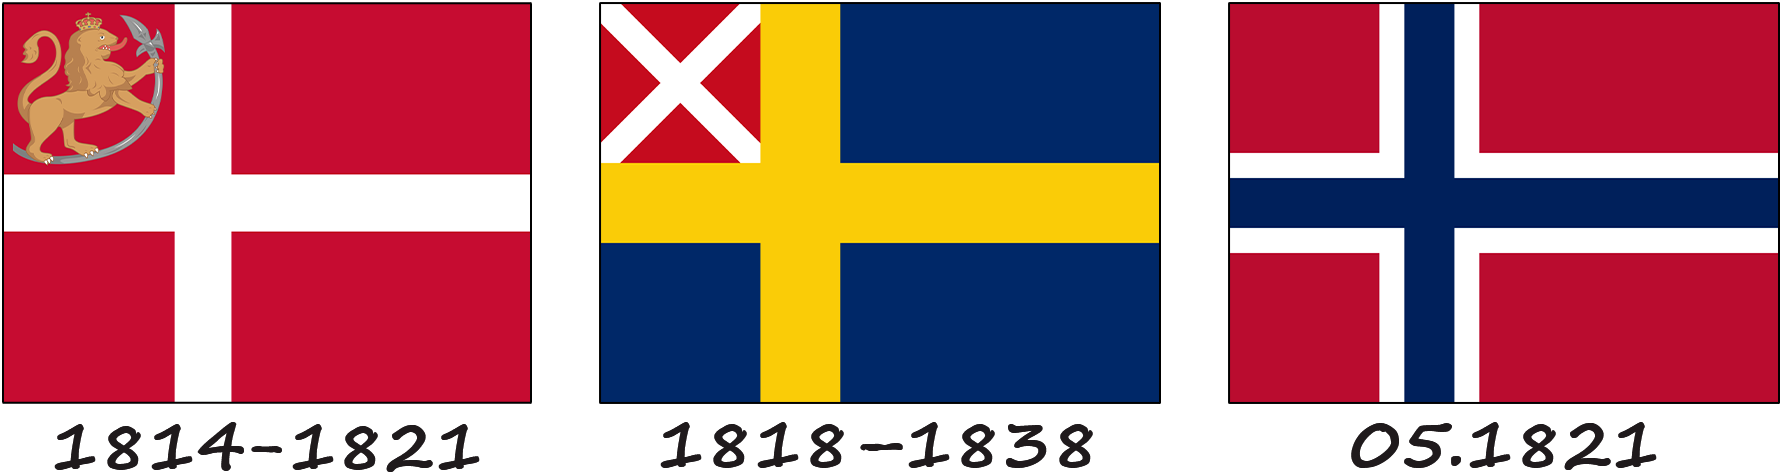 La leyenda de la bandera noruega